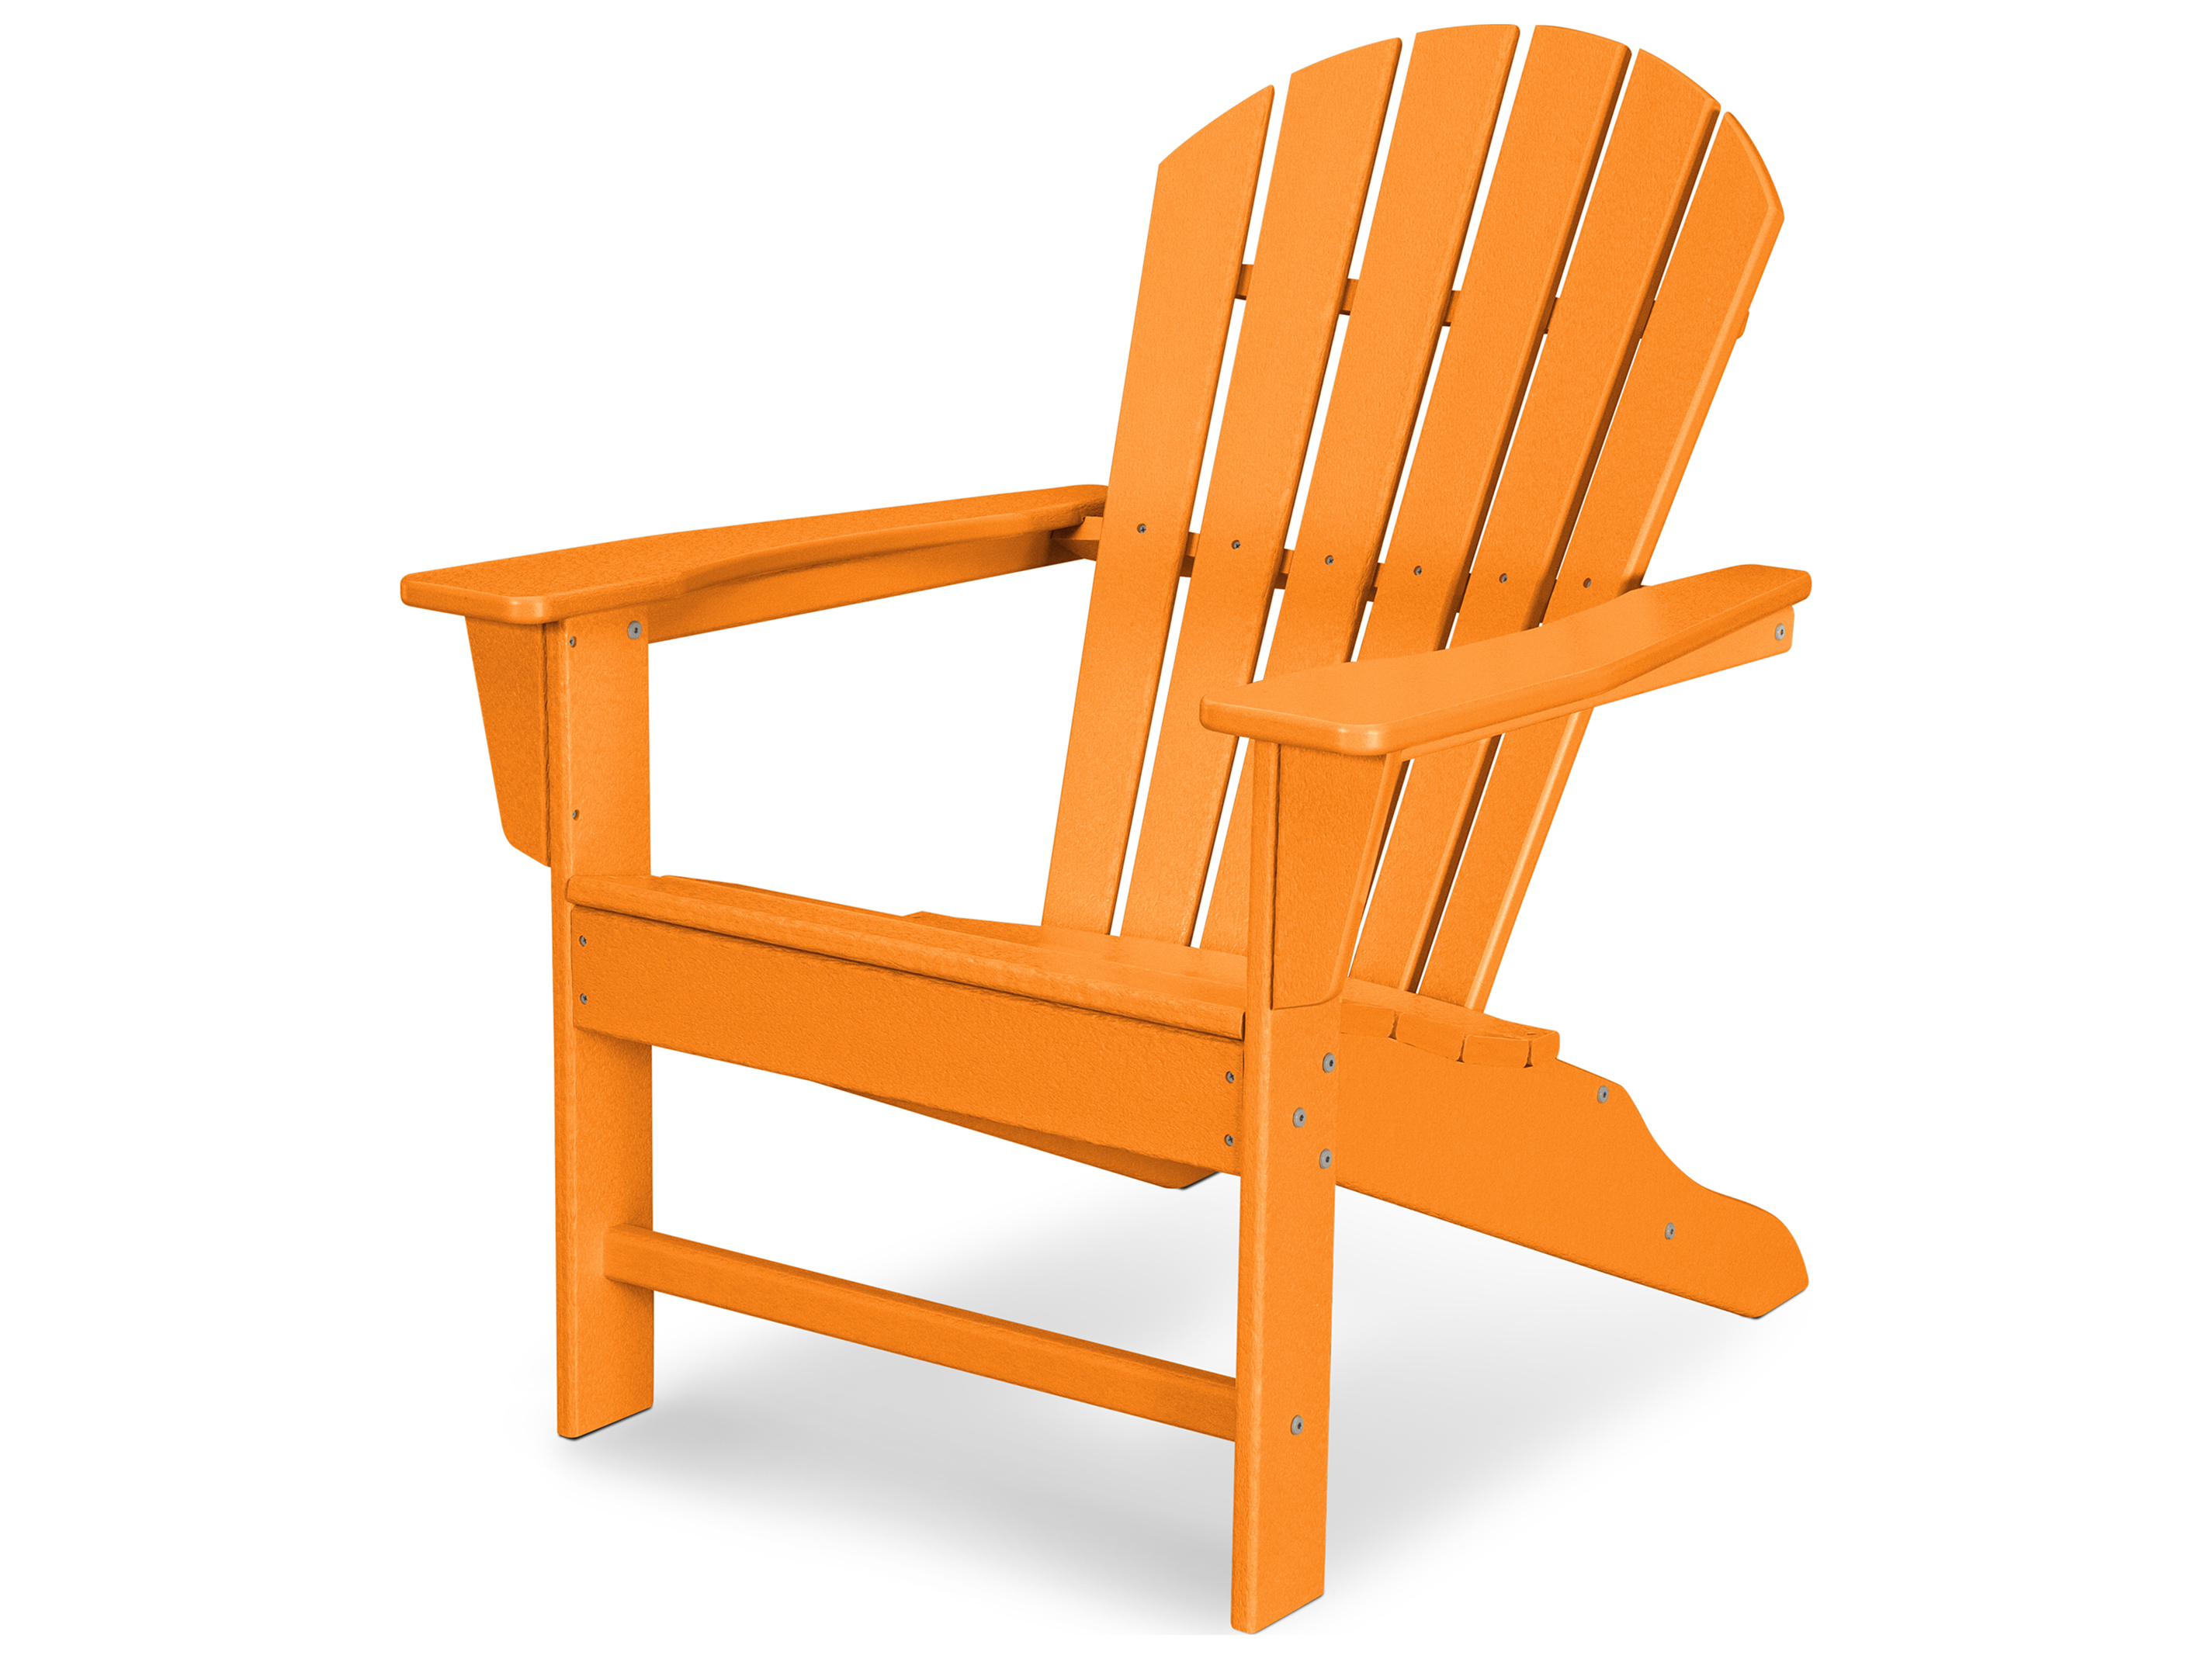 Polywood Adirondack Chairs - yuradio1